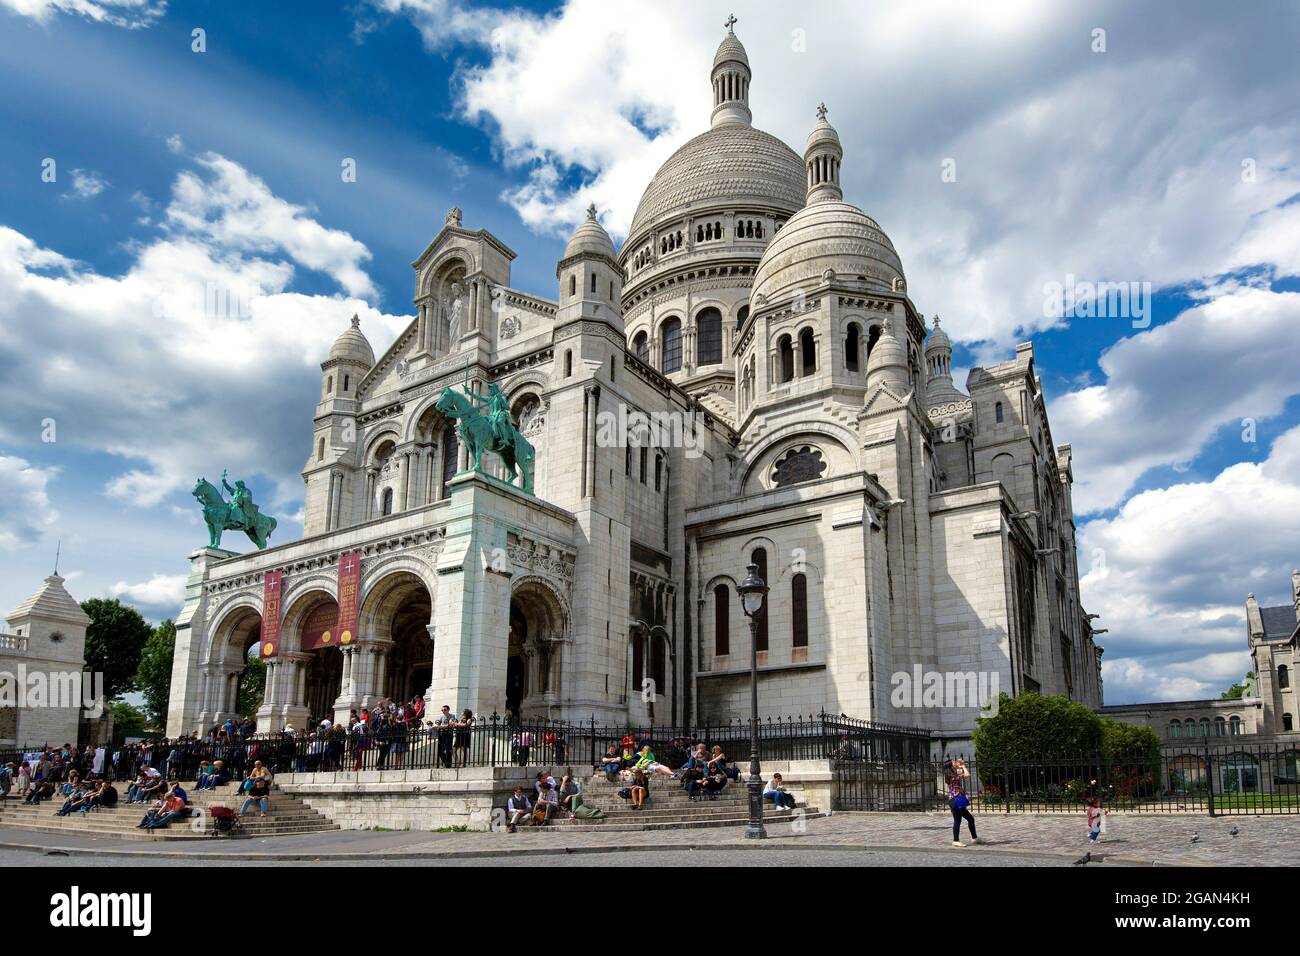 Paris 18e arr, the Basilica of Sacre Coeur in Montmartre, Ile-de-France, France Stock Photo